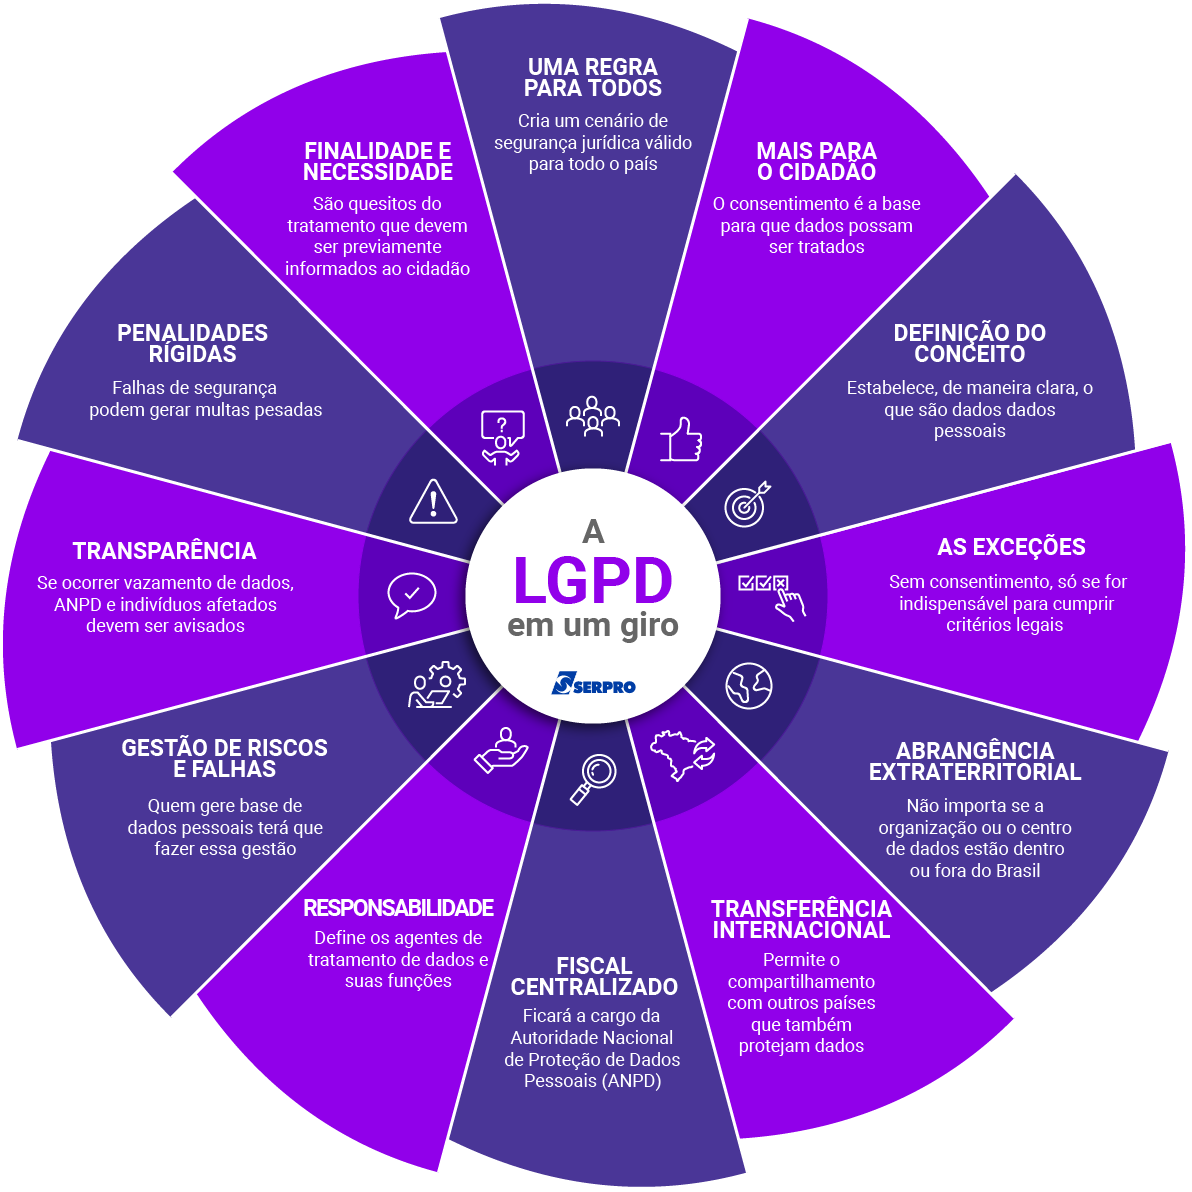 LGPD: Lei Geral de Proteção de Dados